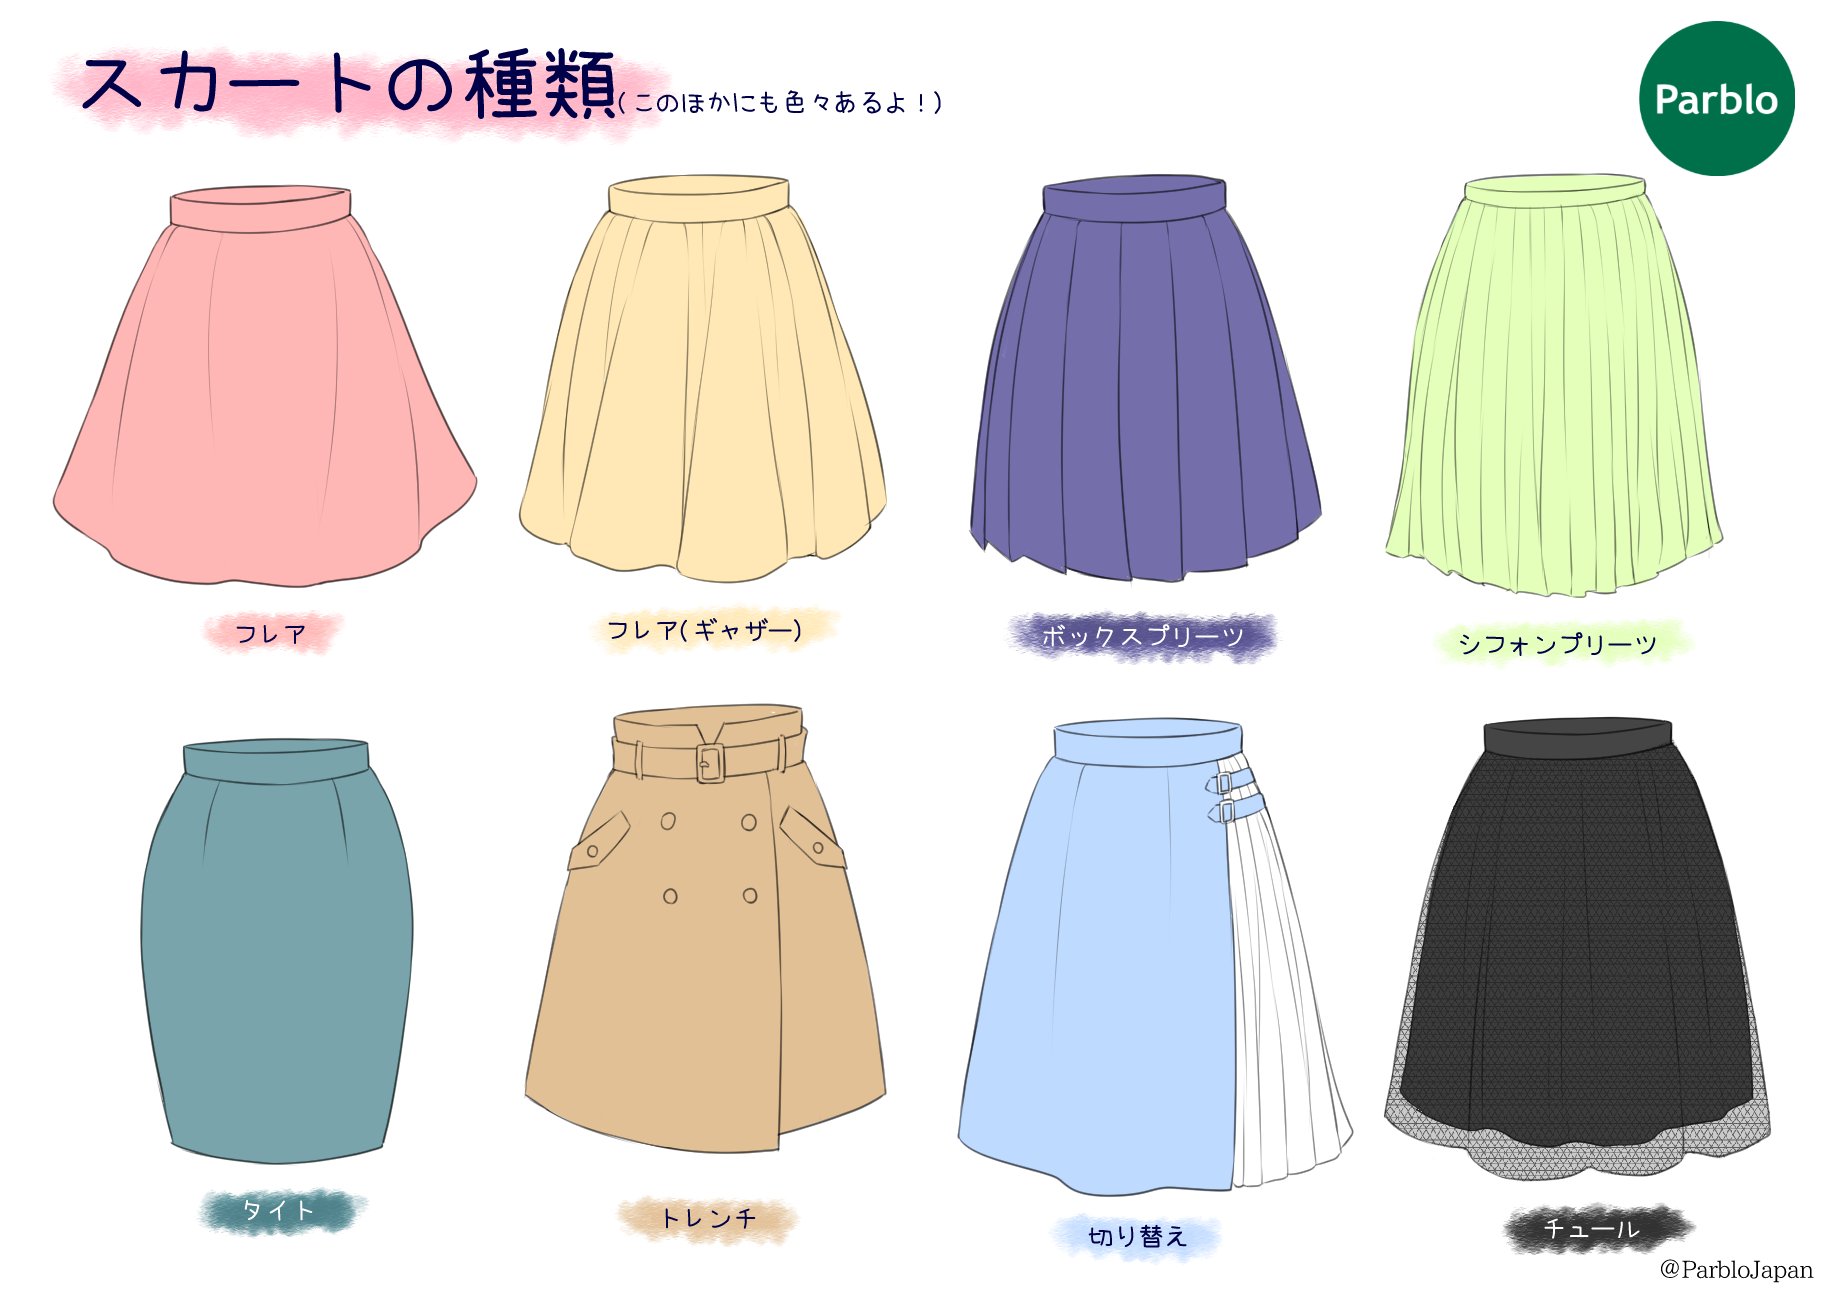 Parblo Japan 創作に役立つ スカートの種類 素材や柄を色々組み合わせることのできる 切り替え スカートは 簡単にオシャレに華やかにできるのでオススメ イラスト好きな人と繋がりたい 絵描きさんと繋がりたい Parblo T Co